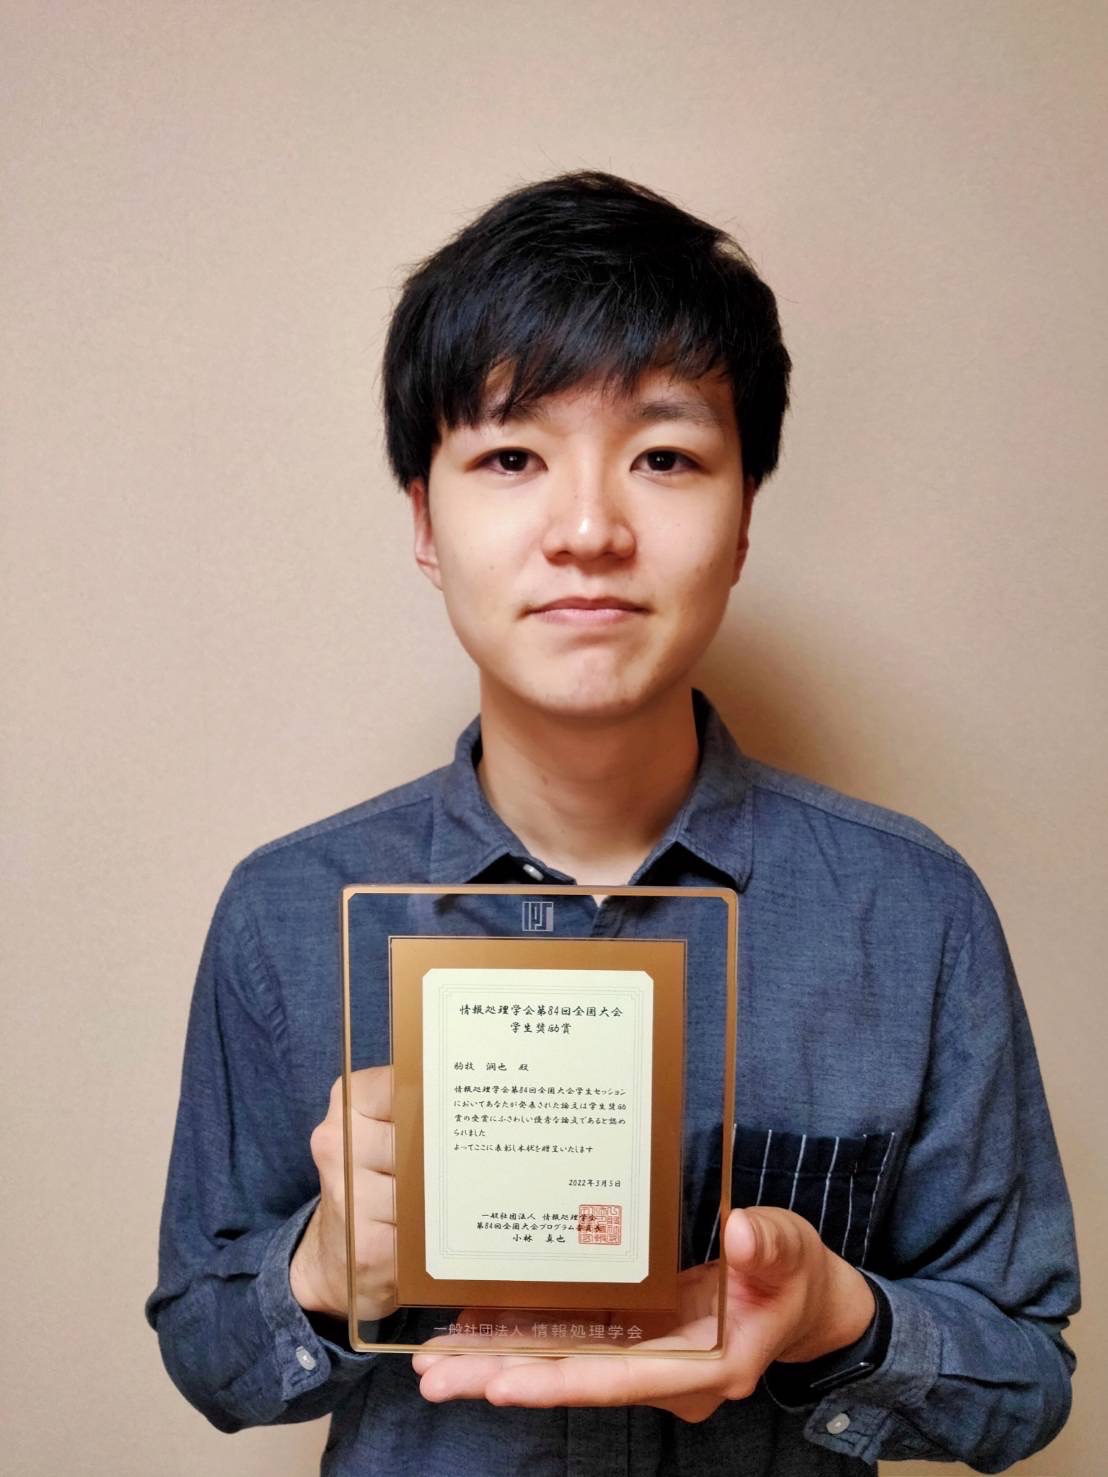 情報メディア学専攻1年生 駒牧潤也さん が学生奨励賞を受賞